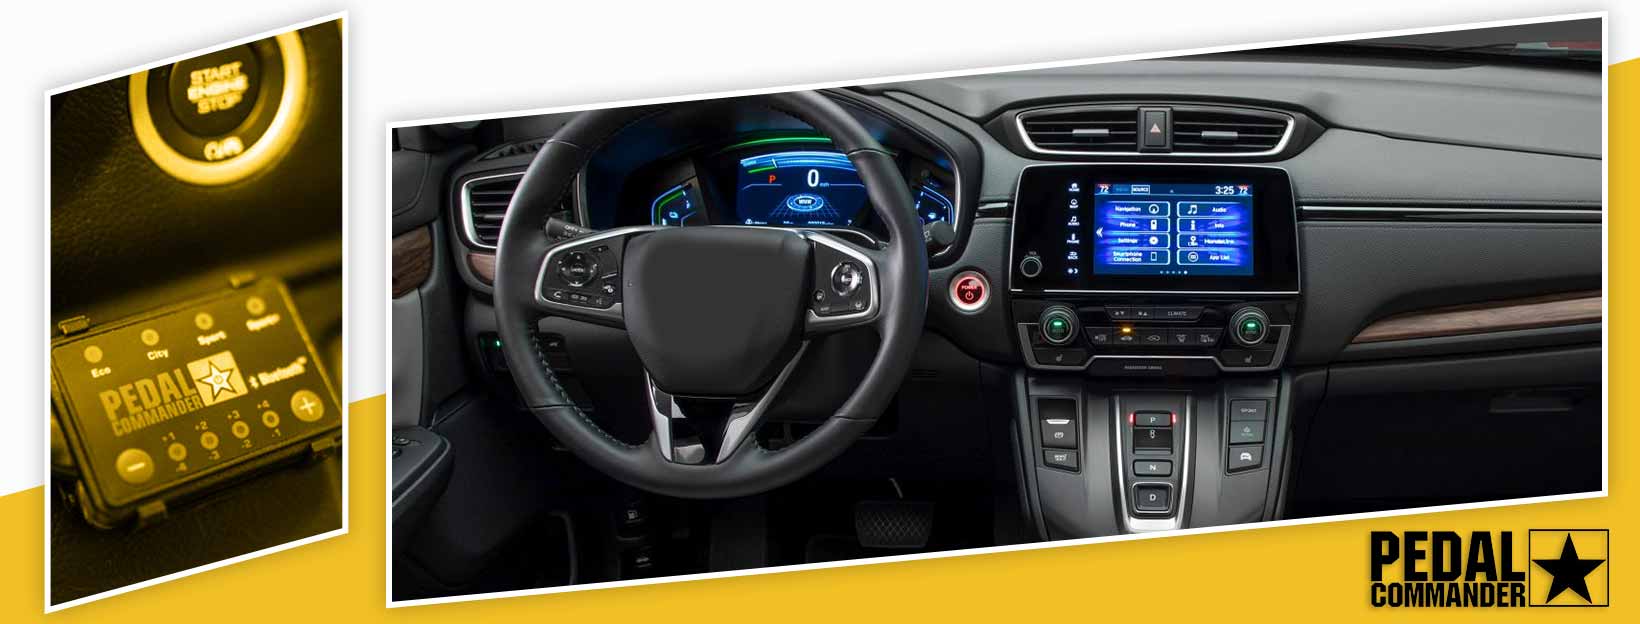 Pedal Commander for Honda CRV - interior